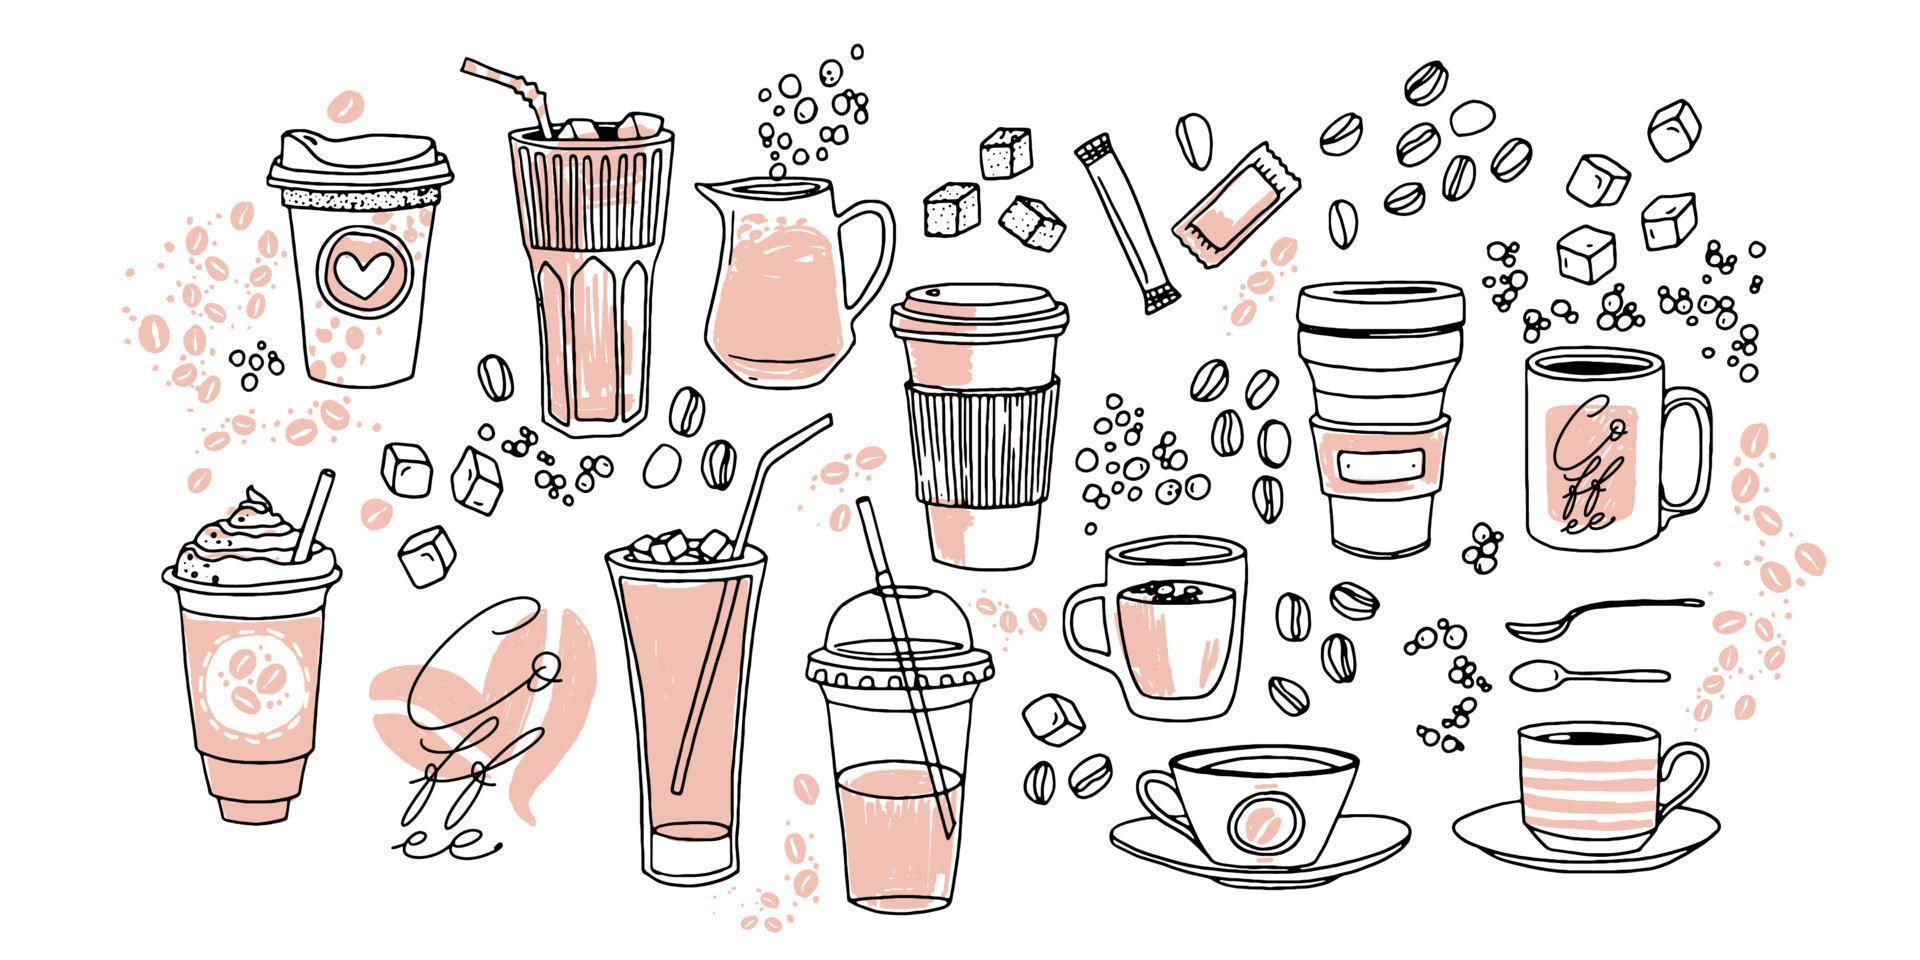 koffie cups hand- getrokken vector illustratie set. divers cups schetsen stijl getrokken verzameling met suiker, lepels, bubbels en koffie bonen. hand- getrokken lineair grafisch middelen.